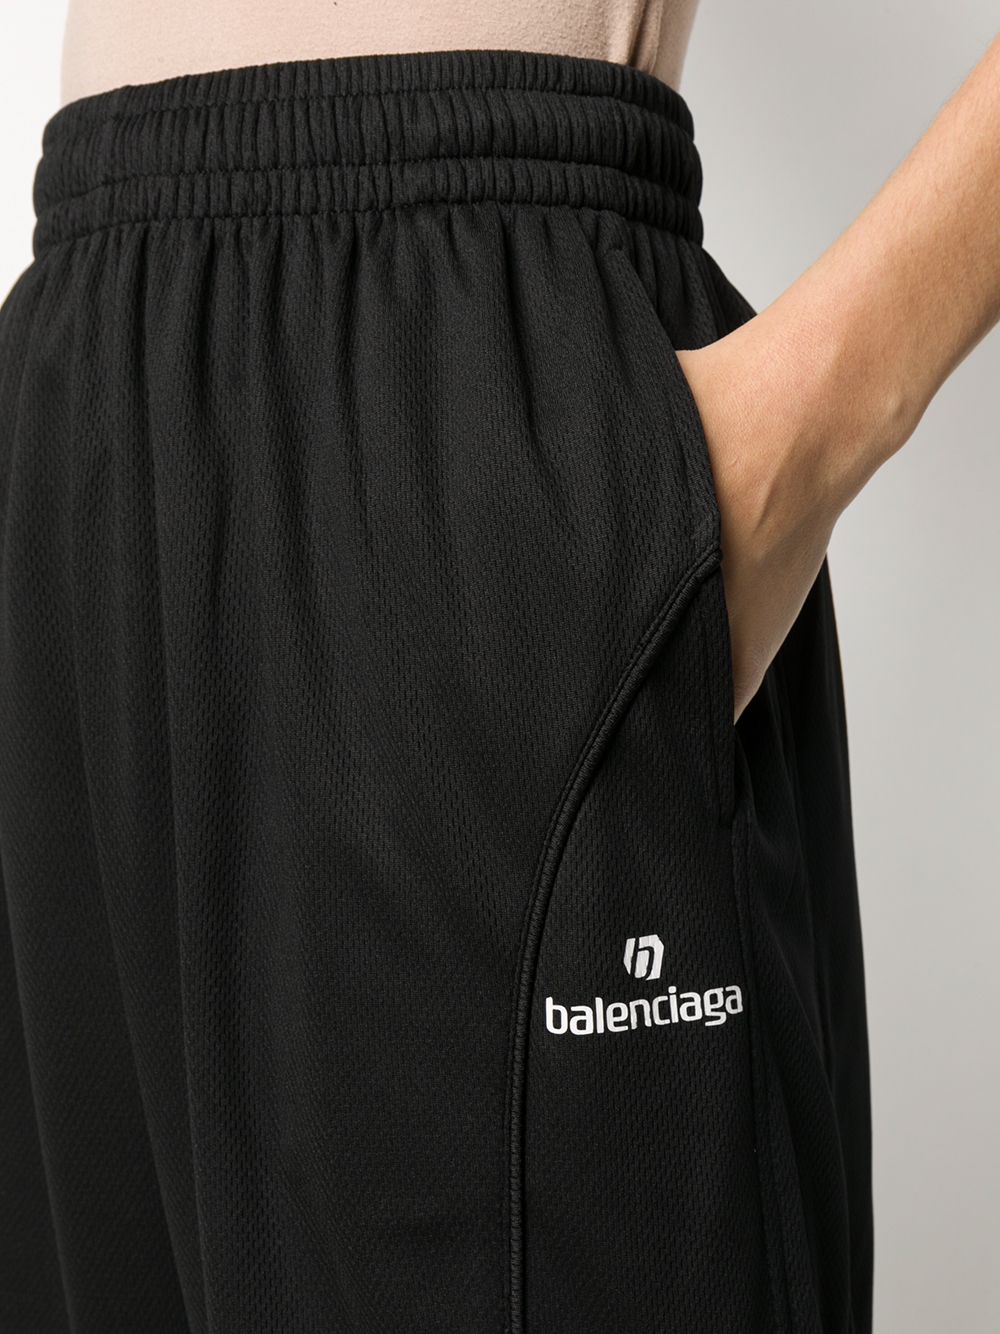 фото Balenciaga спортивные брюки с вышитым логотипом